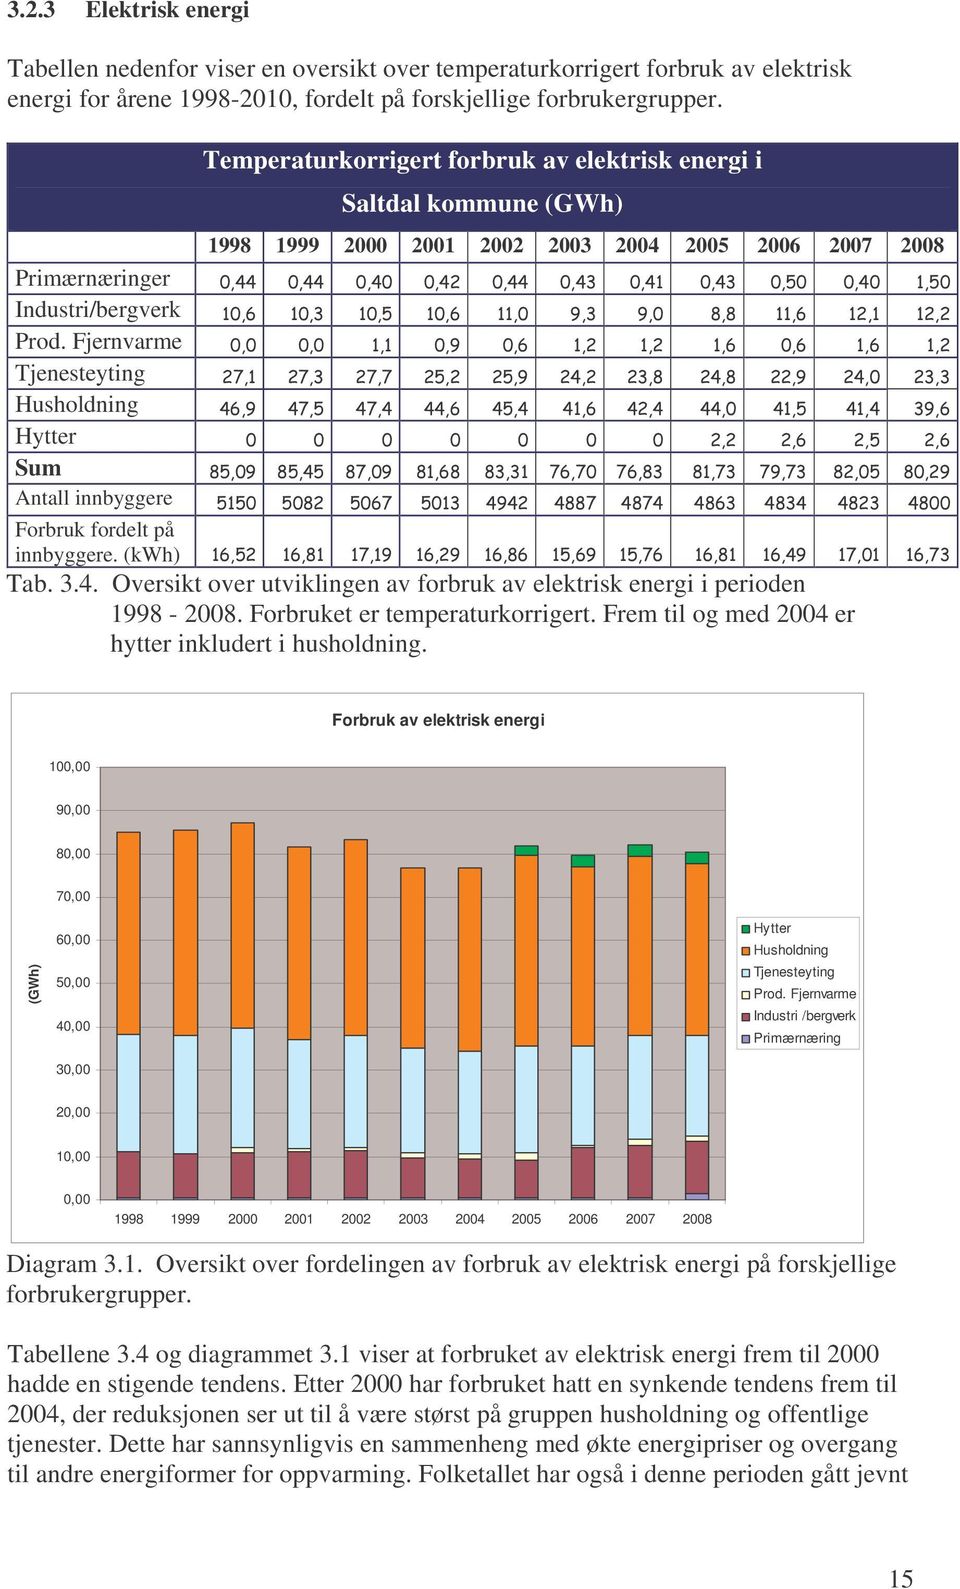 Fjernvarme Tjenesteyting Husholdning Hytter Sum Antall innbyggere Forbruk fordelt på innbyggere. (kwh) Tab. 3.4. Oversikt over utviklingen av forbruk av elektrisk energi i perioden 1998-2008.